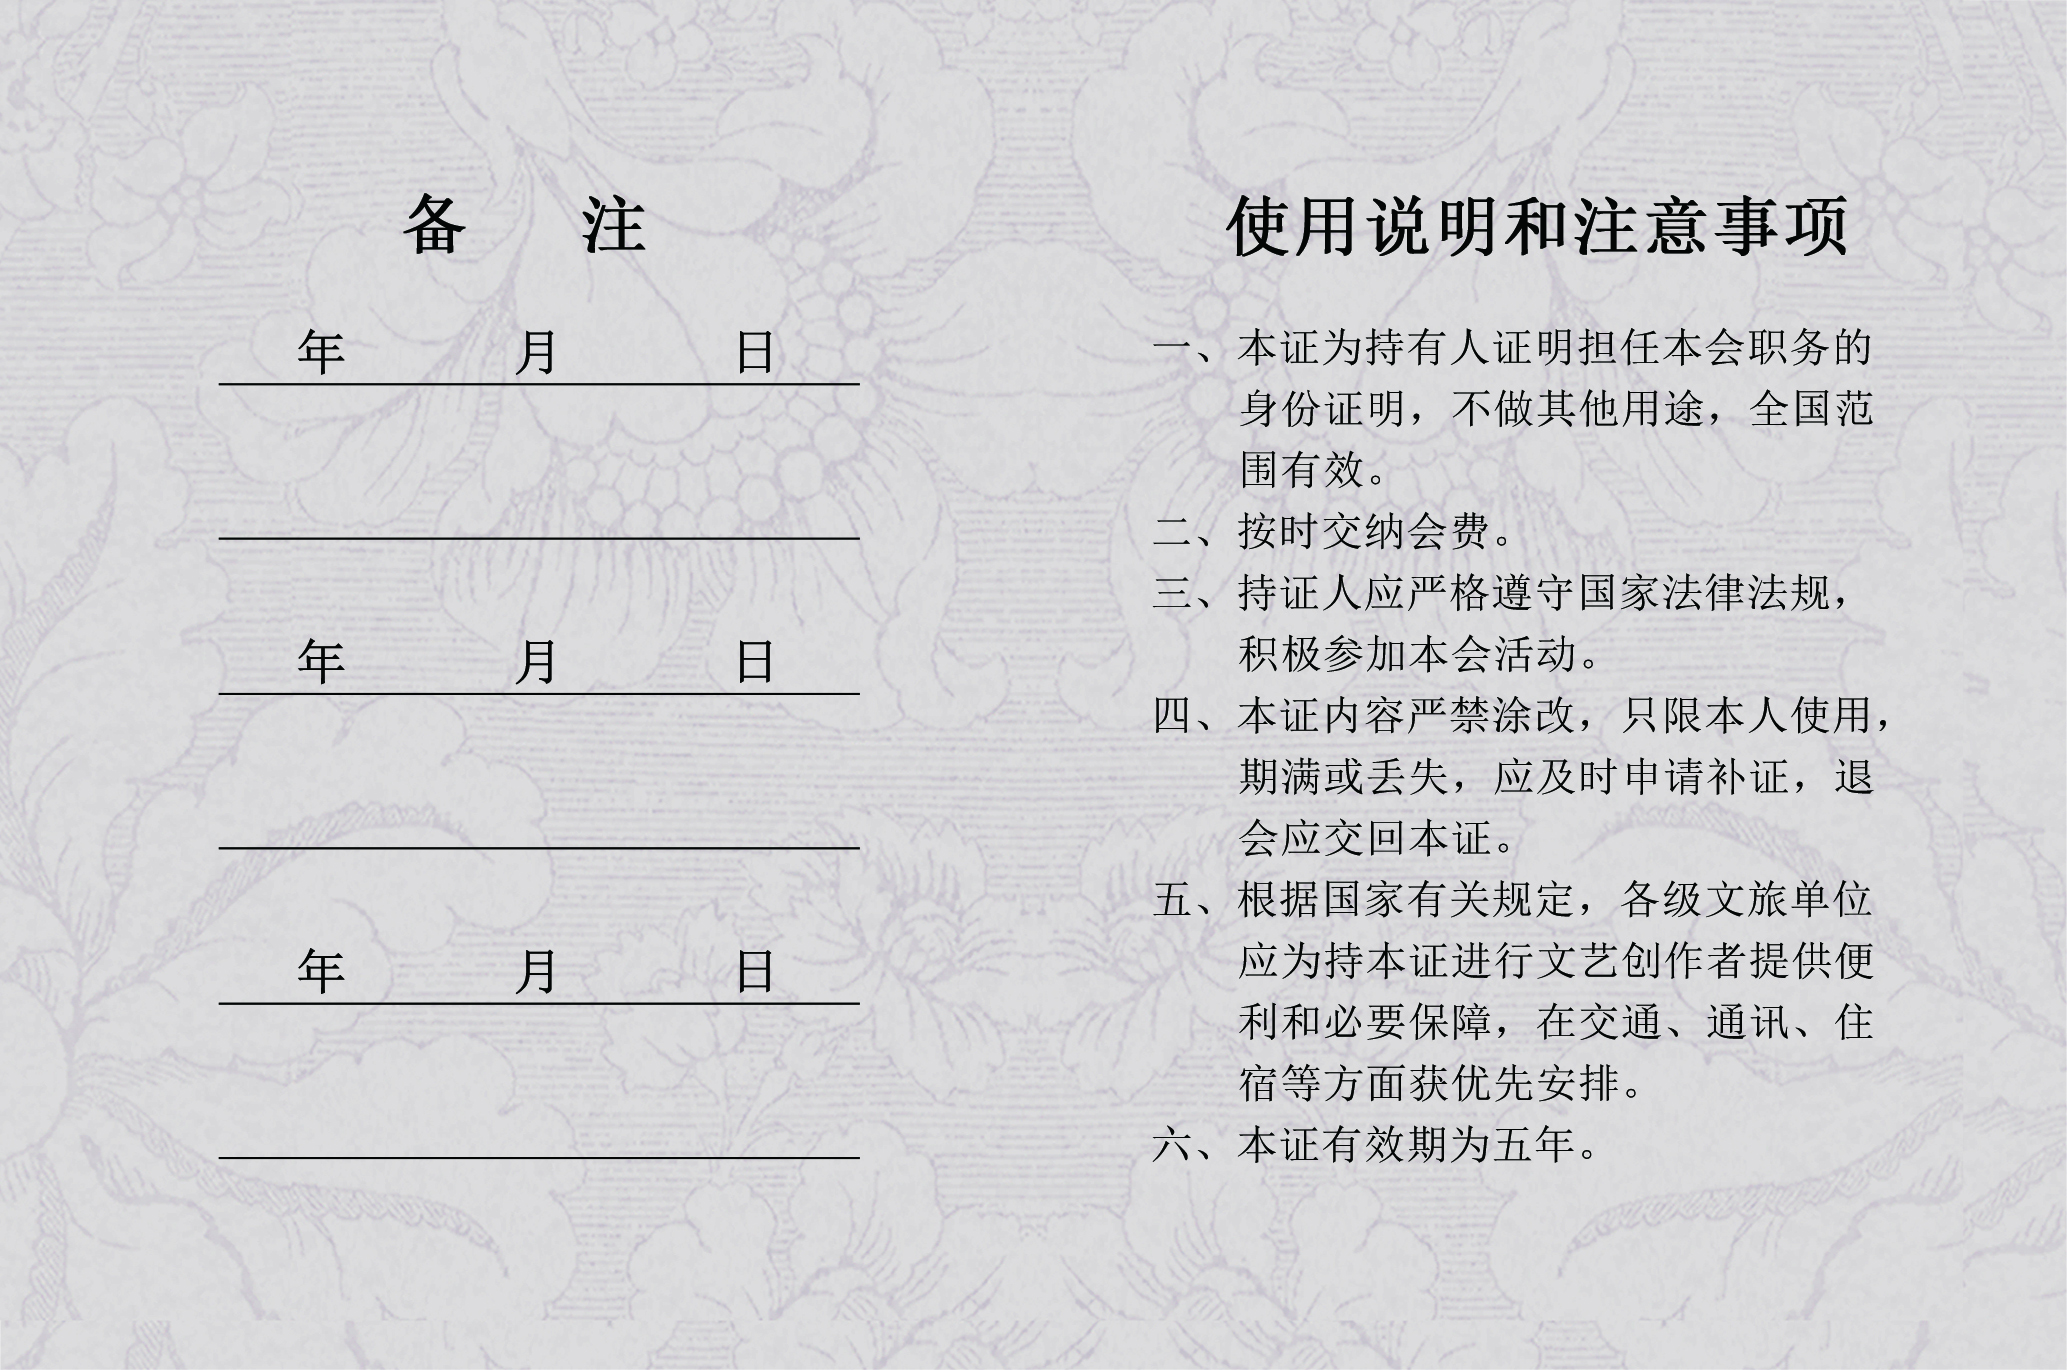 中国大众文化学会名人书画艺术发展委员会资格认证书（样本）